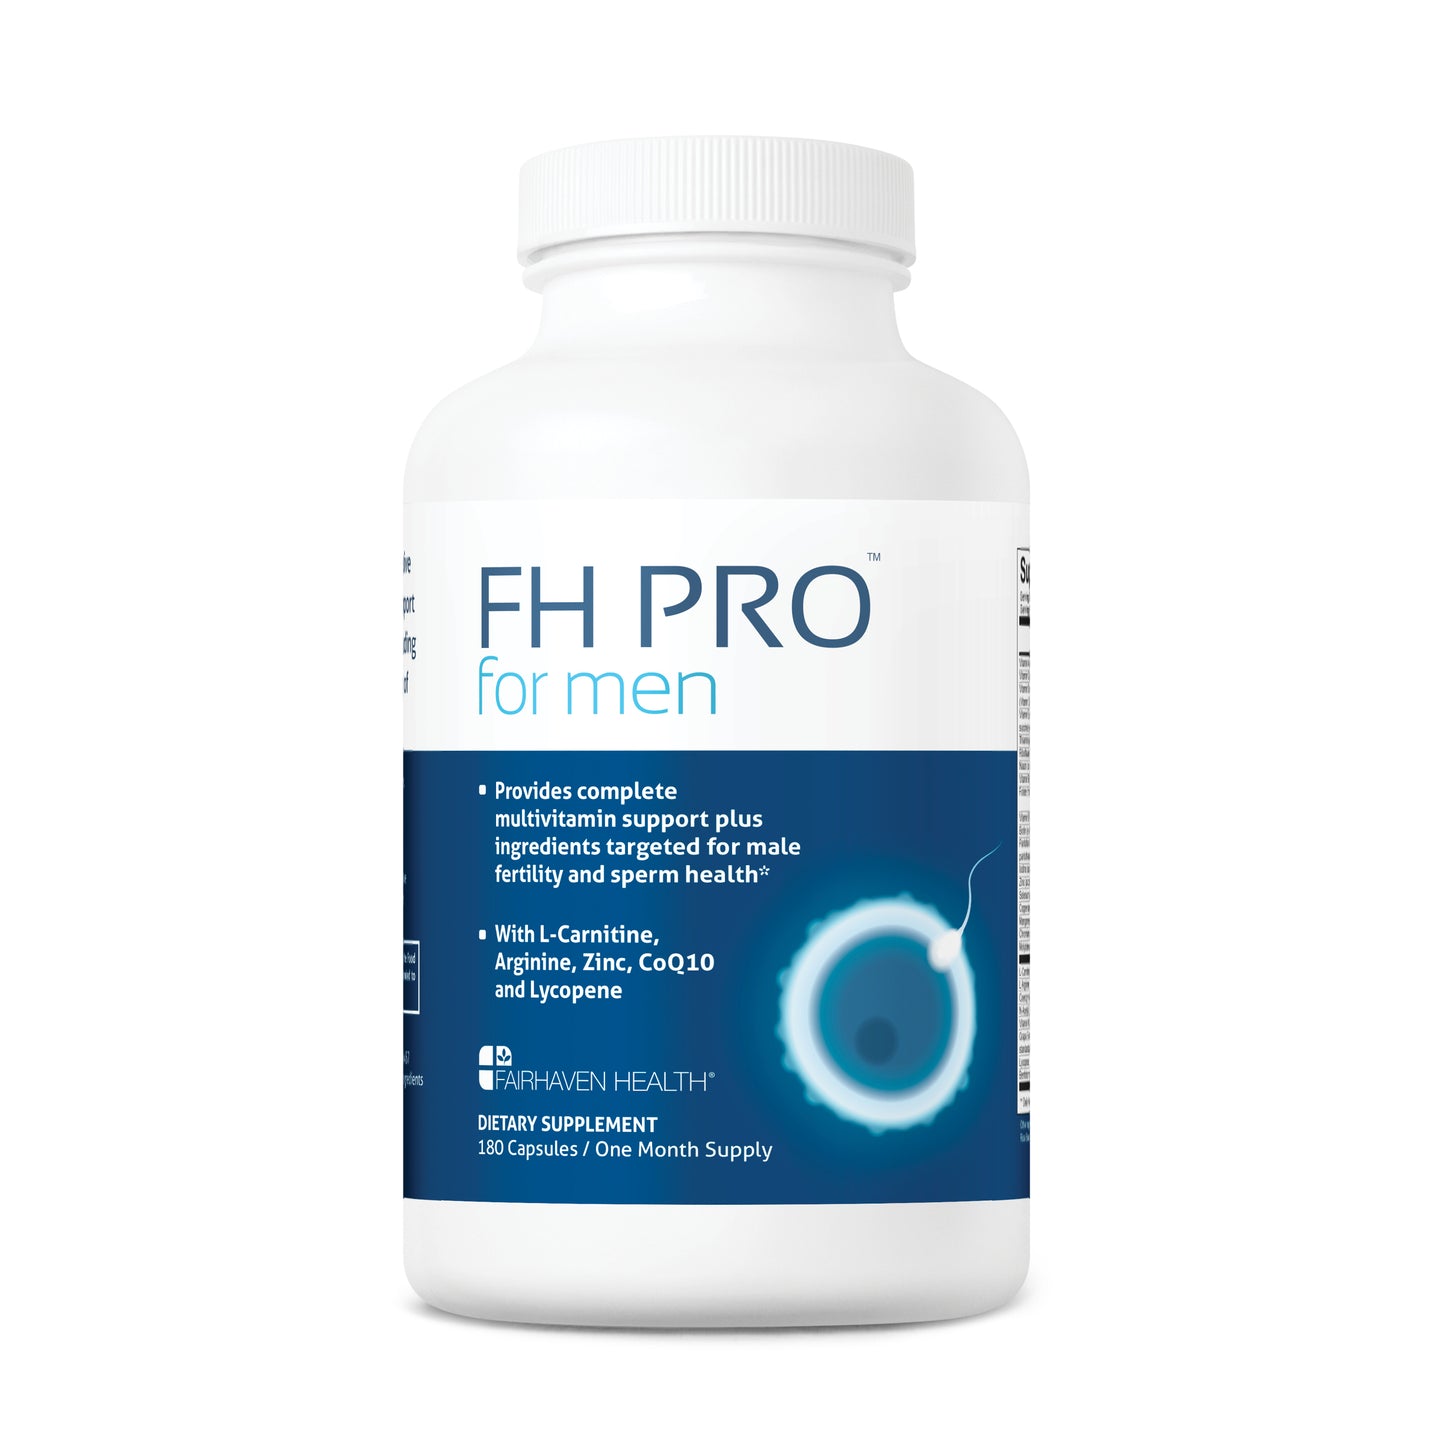 Fairhaven Health's FH PRO for Men